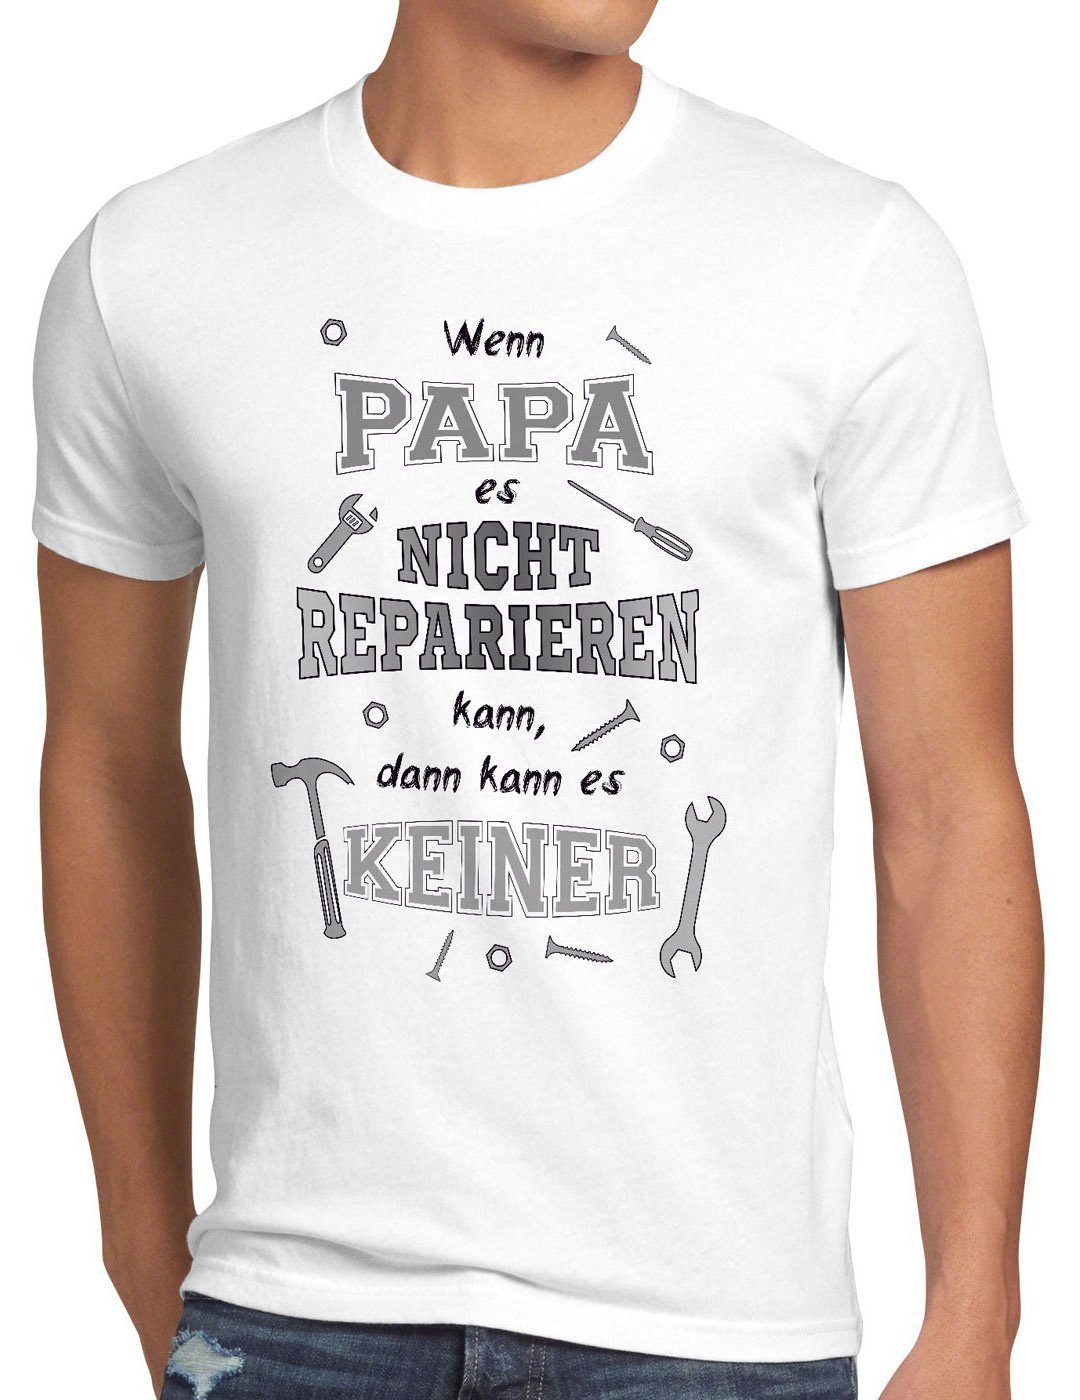 style3 Print-Shirt Herren T-Shirt Wenn Papa nicht reparieren kann es keiner Shirt Spruch Funshirt weiß